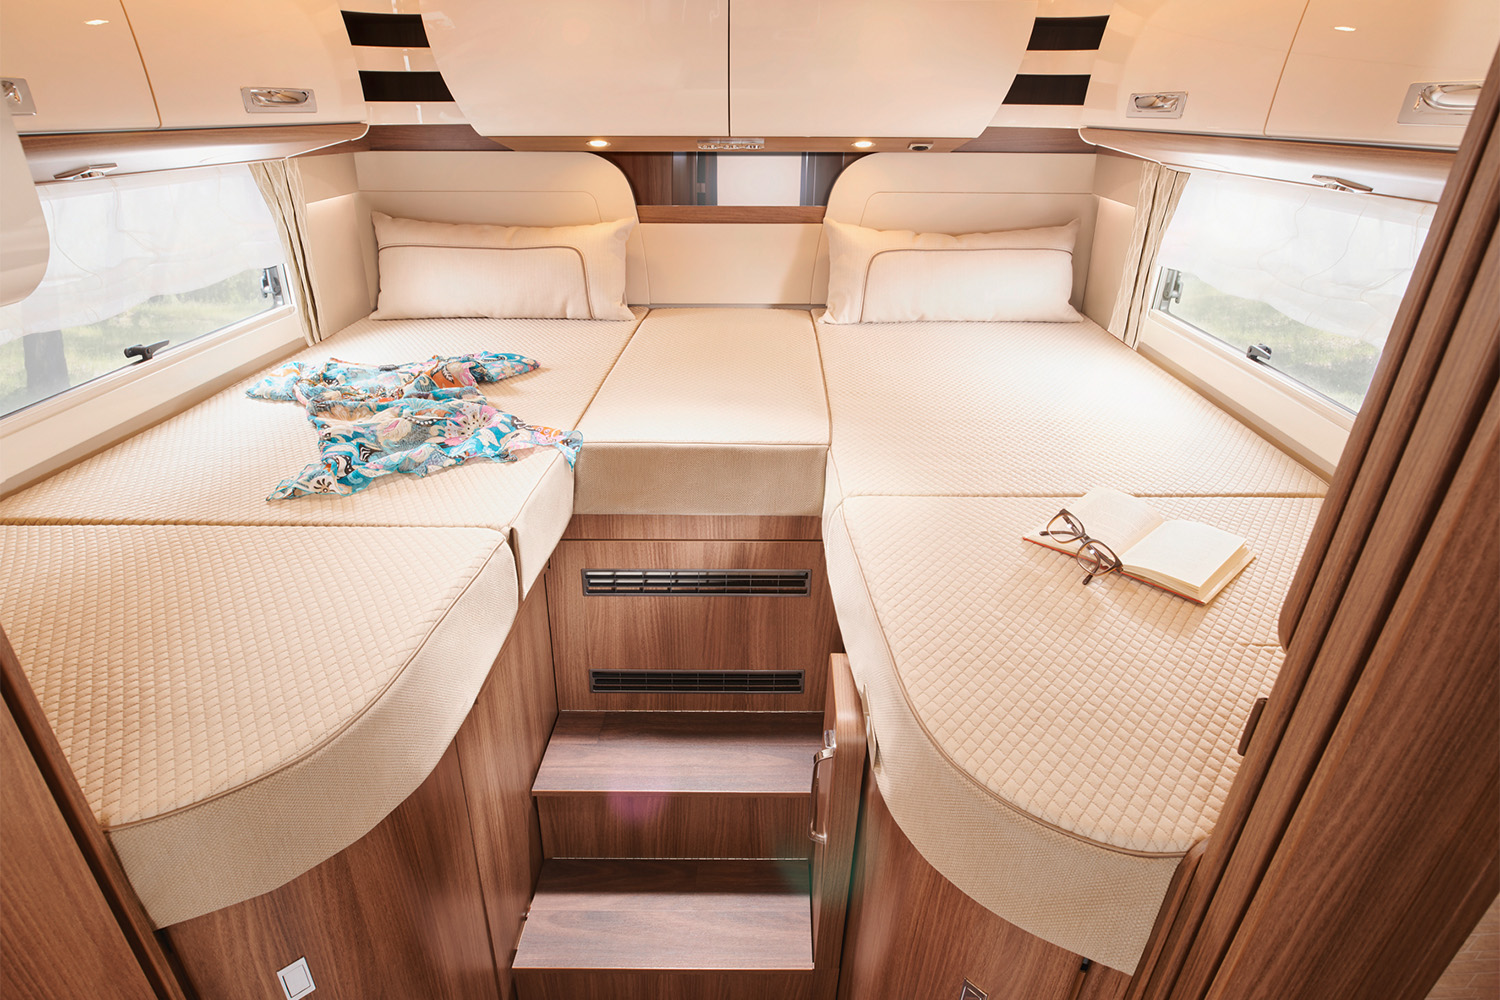 Schlafbereich eines integrierten Reisemobils mit Längeinzelbetten und vielen Dachschränken für optimalen Stauraumnutzen